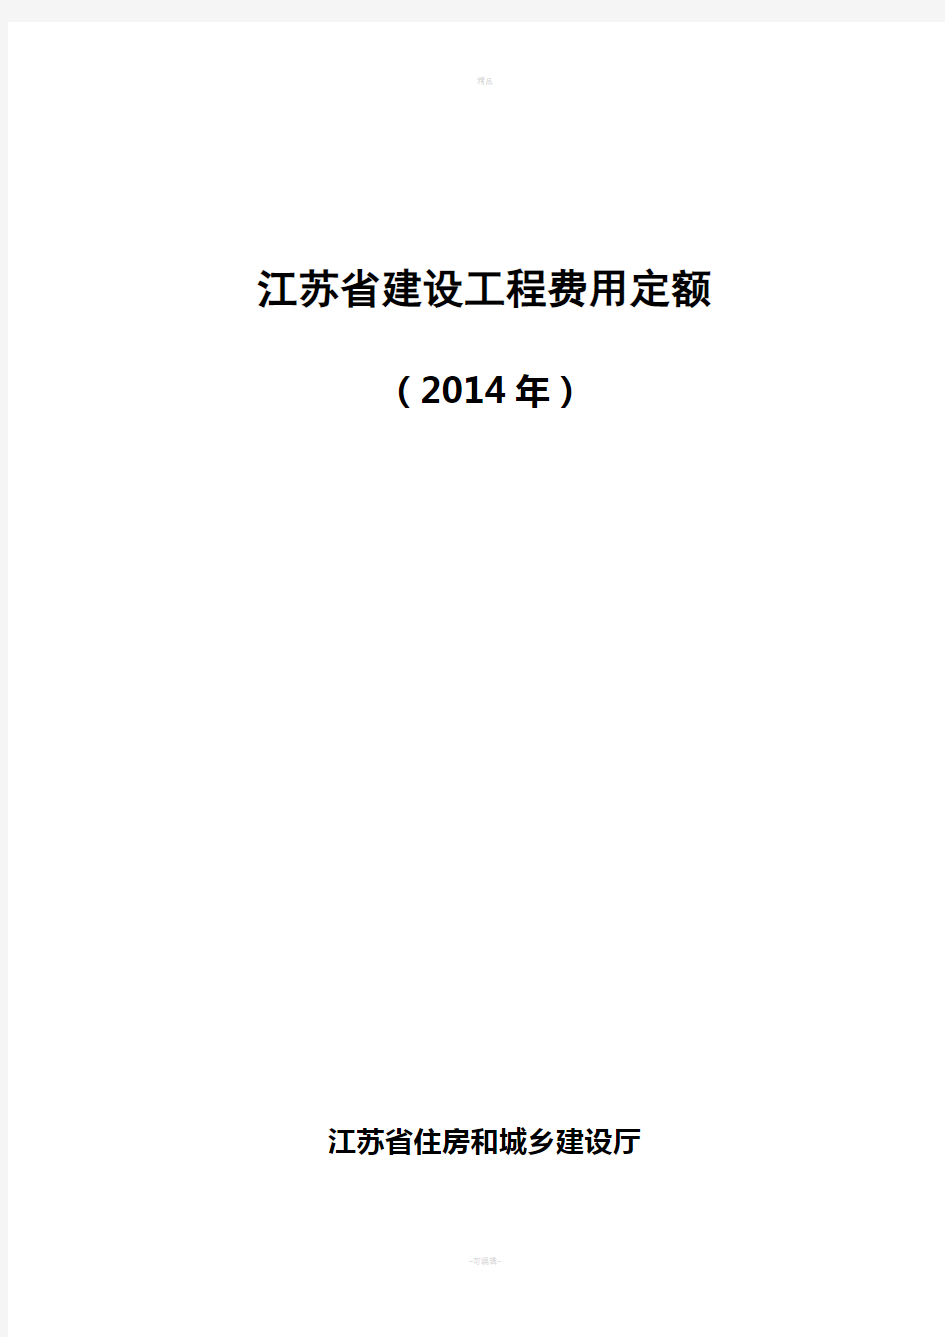 江苏省建设工程费用定额(2014年)299号